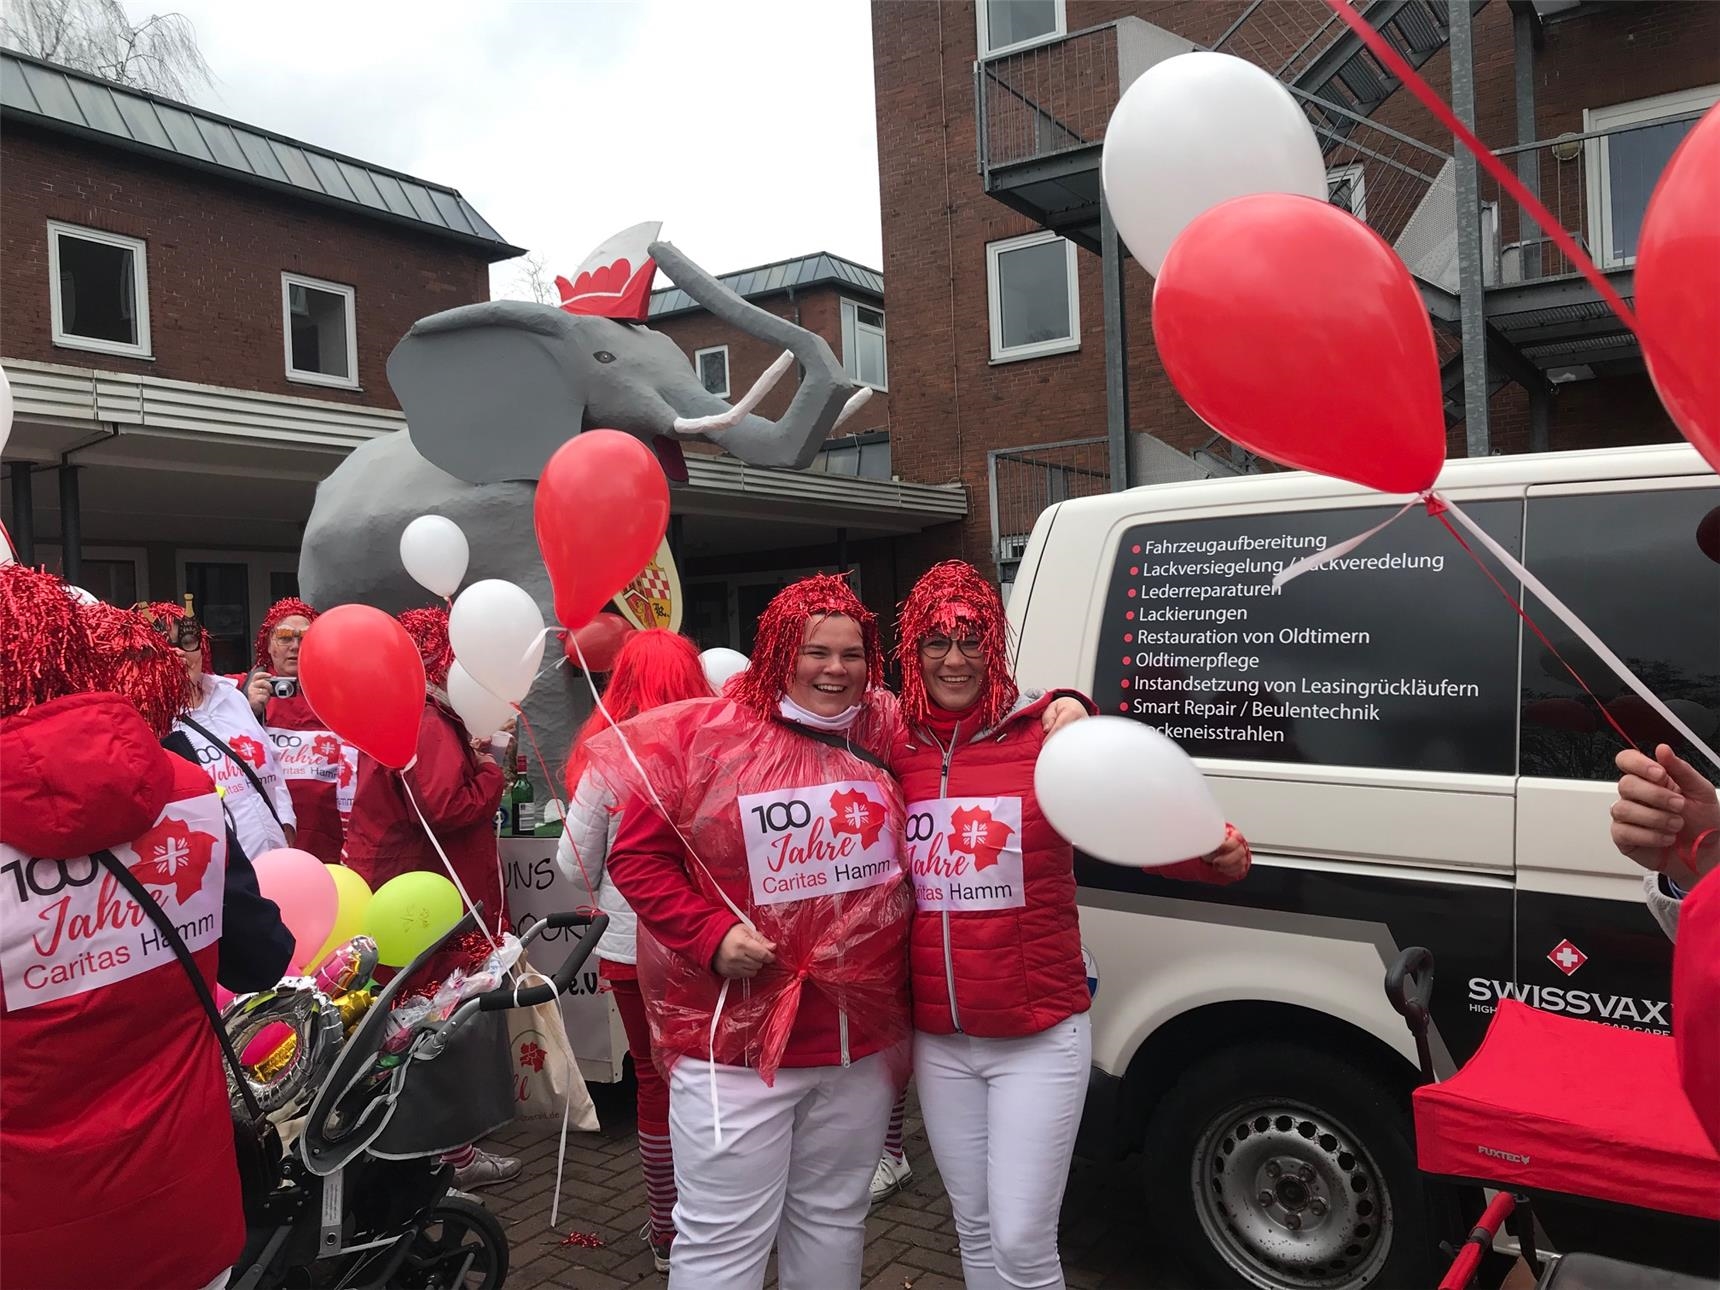 Rot-weiß gekleidete Frauen mit roten Perücken und Luftballons (Caritas Hamm)